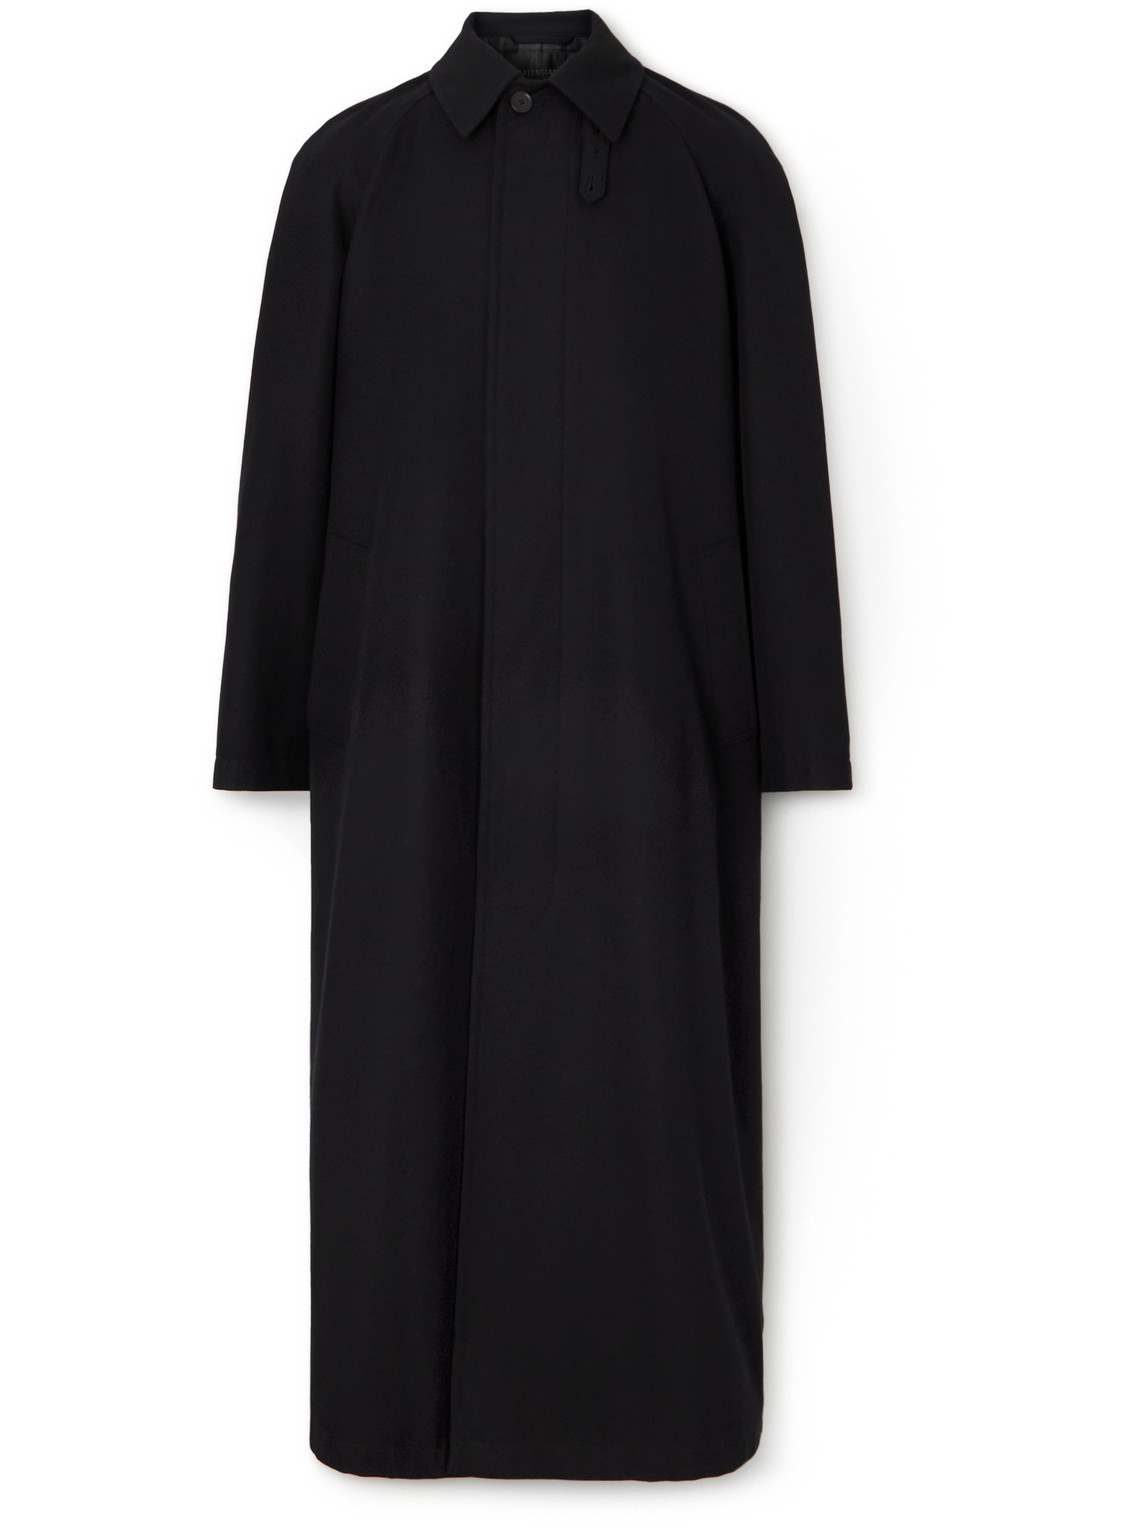 Balenciaga - Oversized Wool and Cotton-Blend Coat - Men - Black - 3 von Balenciaga